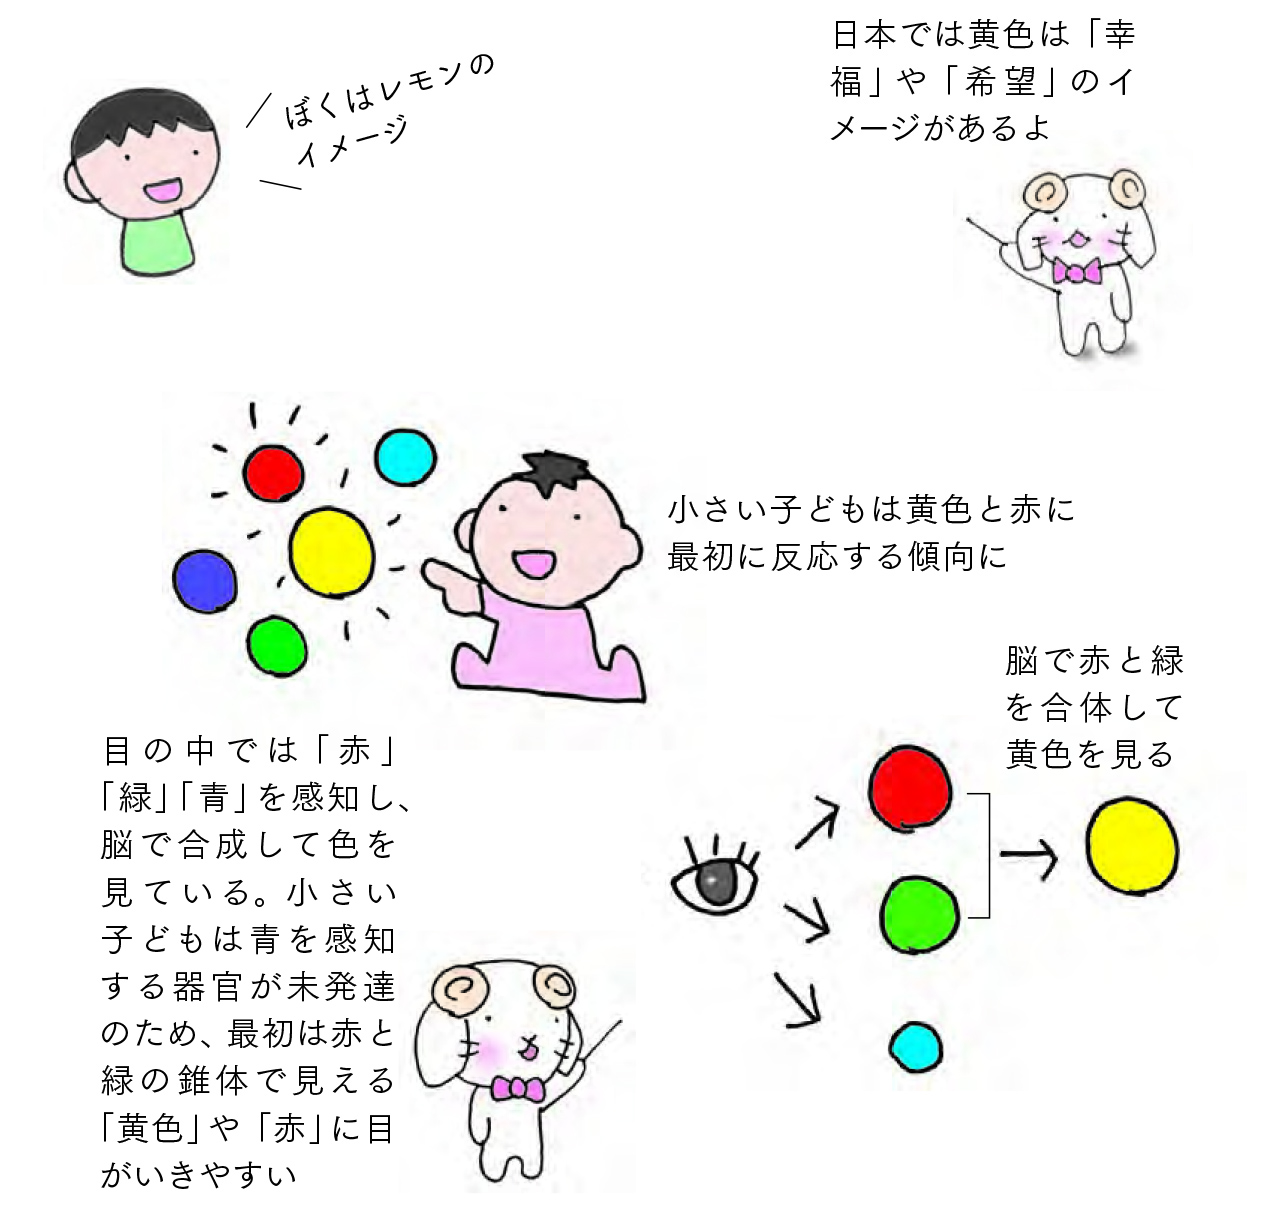 日本では黄色は「幸福」や「希望」のイメージ『色と性格の心理学』